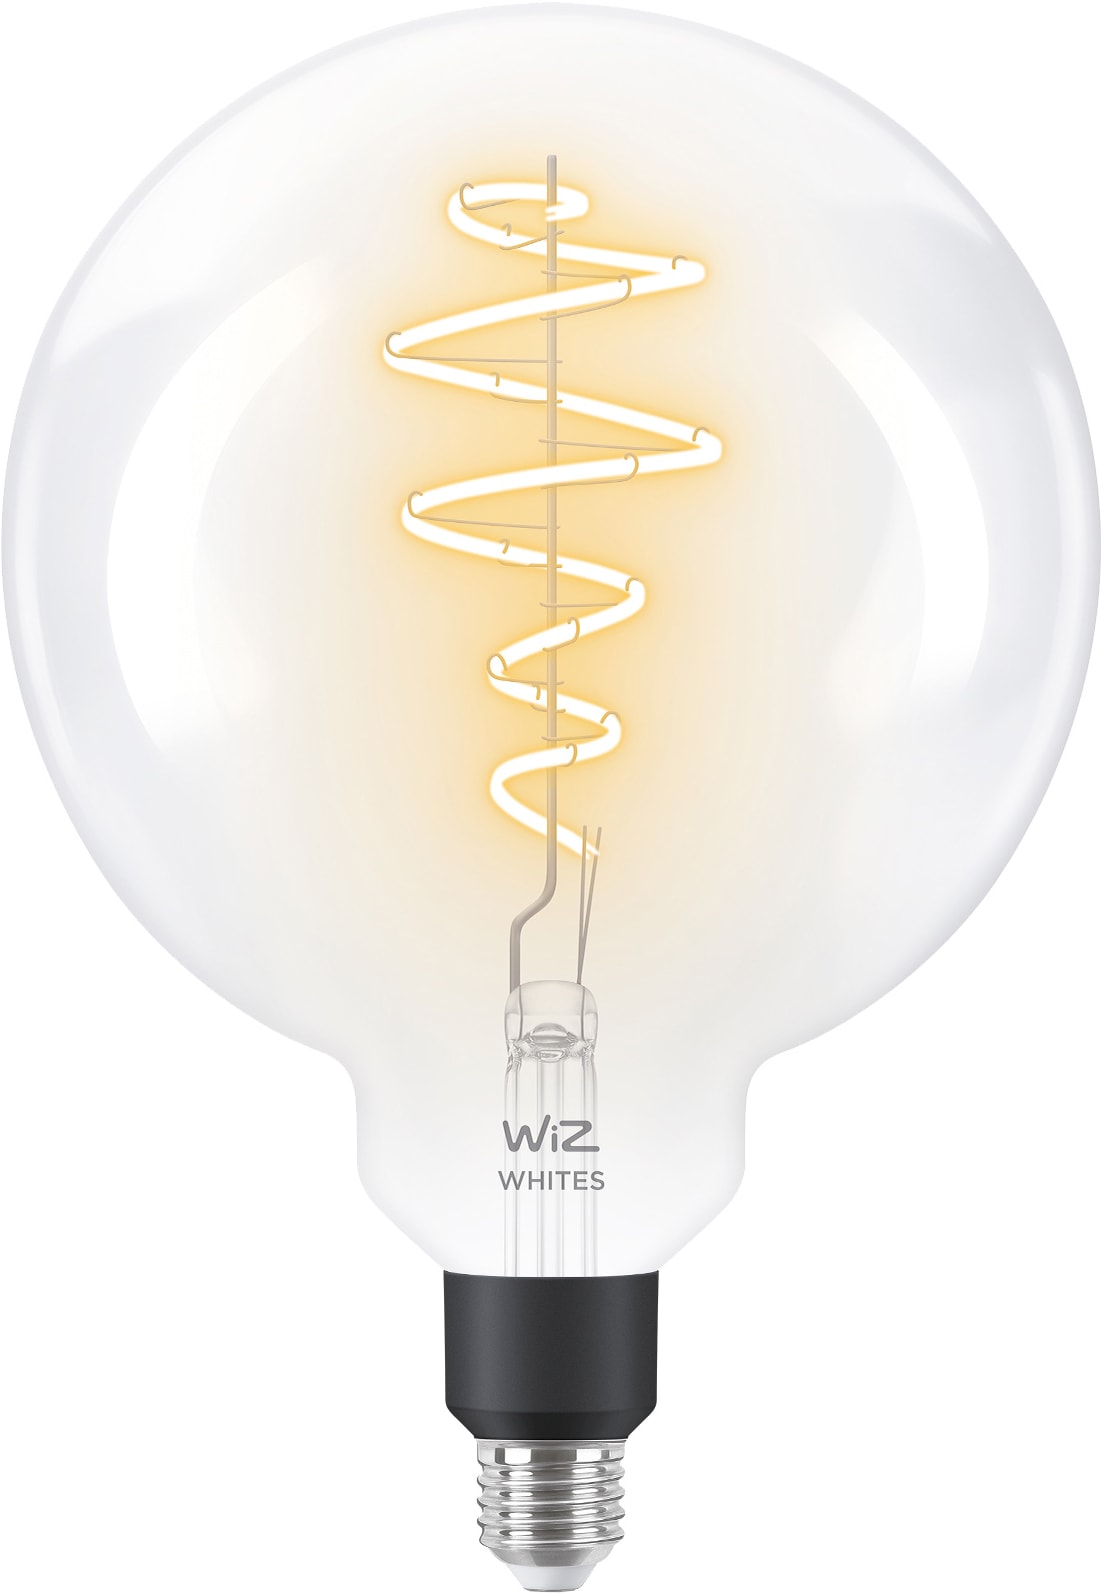 Billede af Wiz Light Globe LED-pære 7W E27 871869978673100 hos Elgiganten